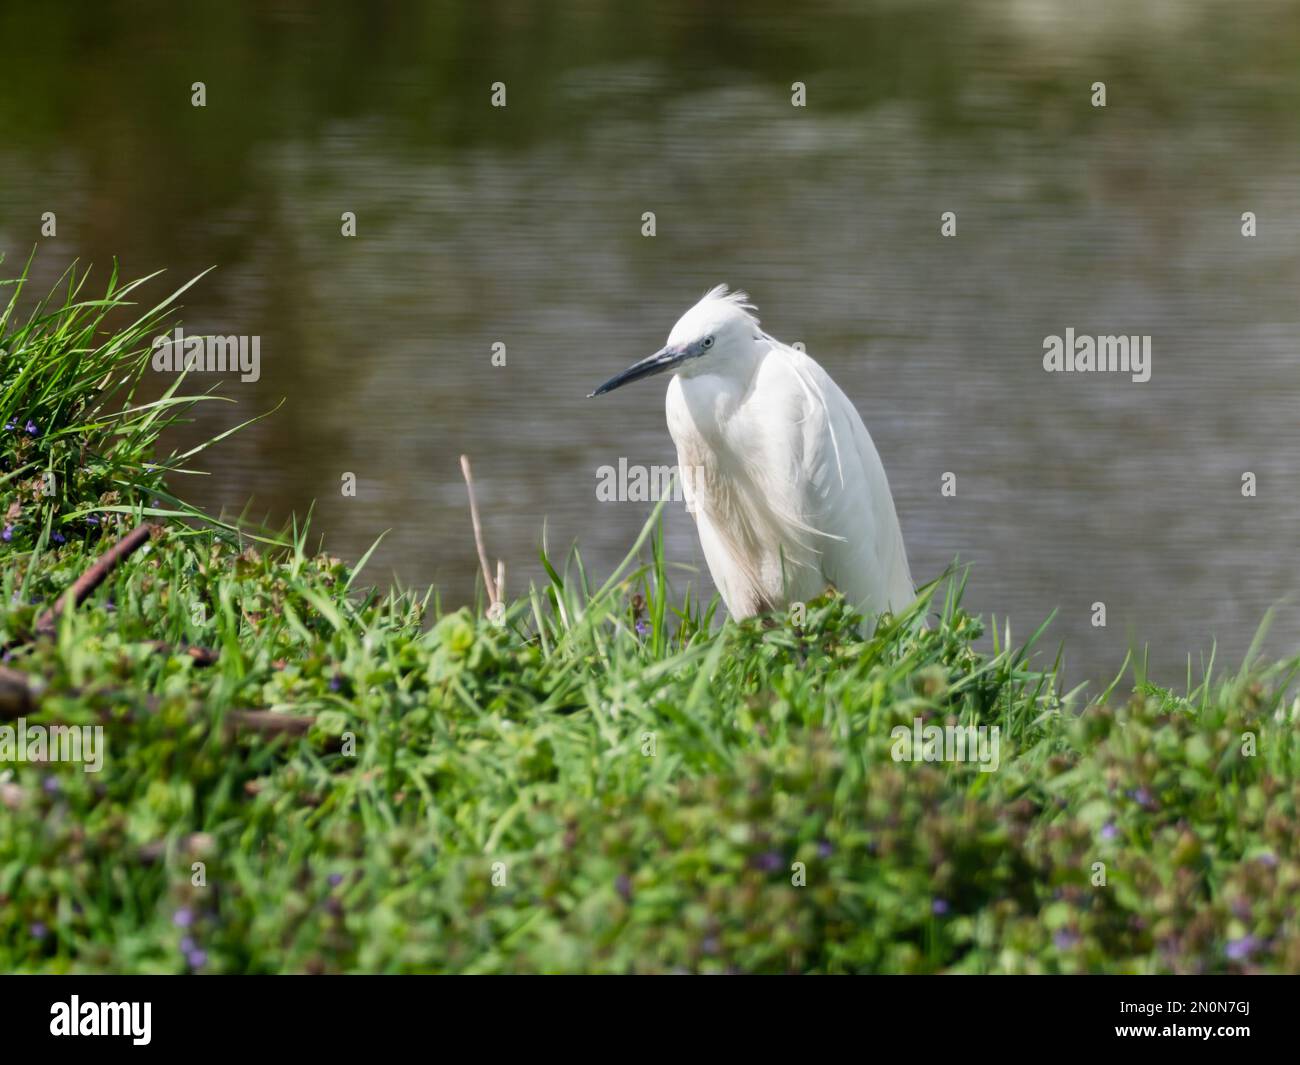 Petit égret ou garzetta Egretta. Le petit héron blanc se trouve dans l'herbe près de l'étang. Banque D'Images